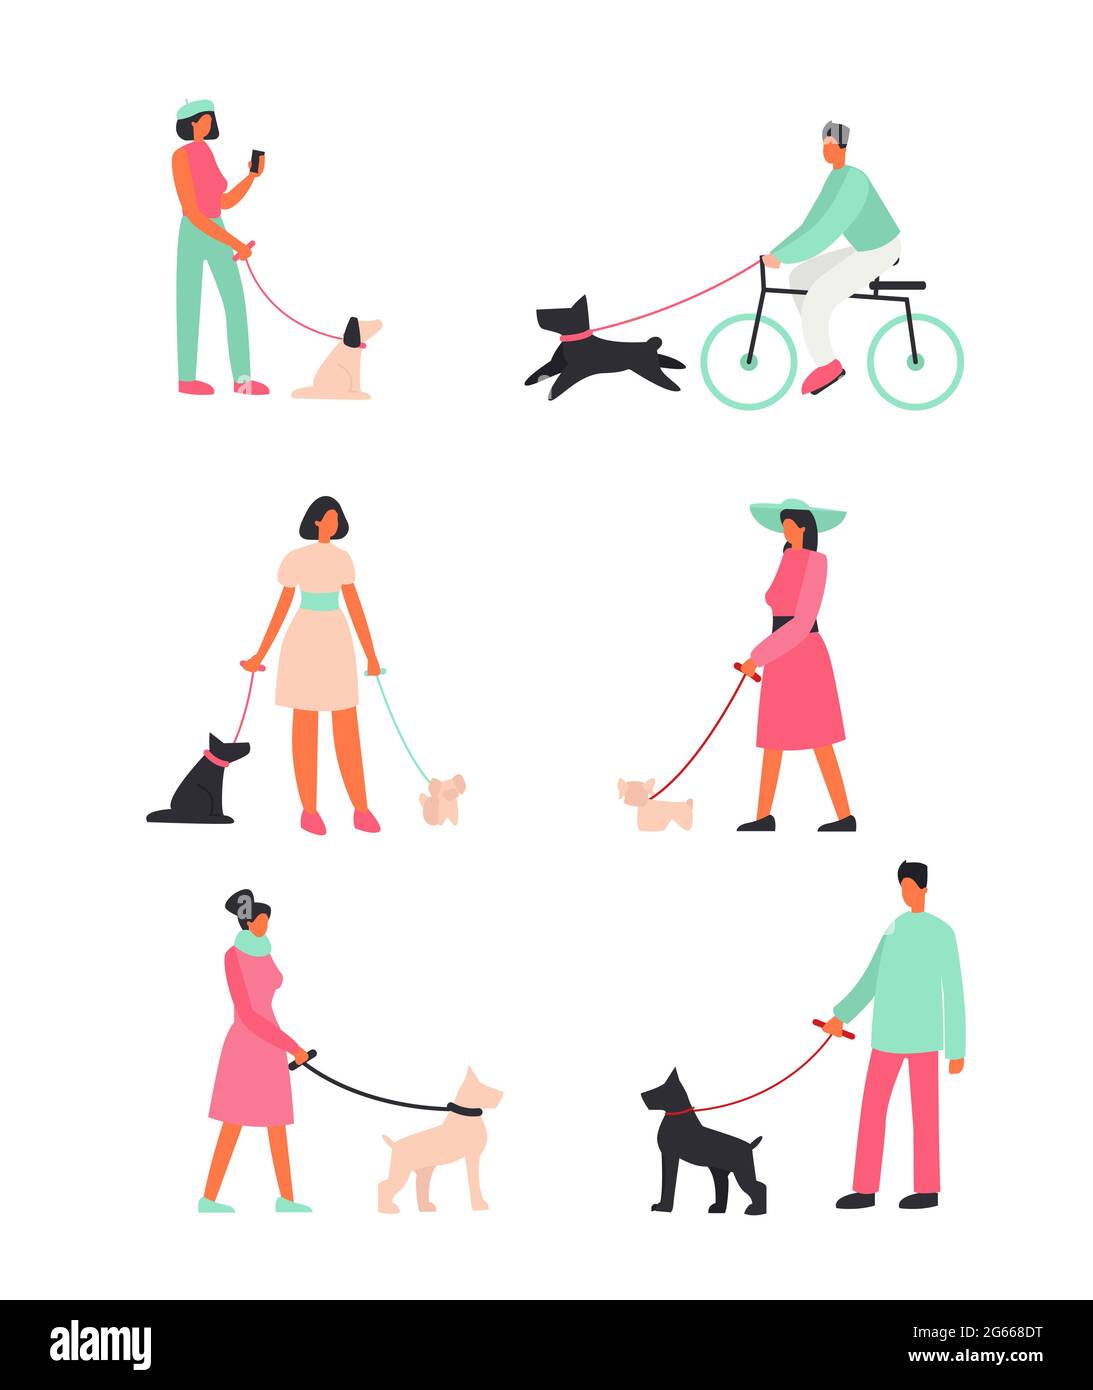 Vektorgrafik Set Menschen mit Hunden stehen und gehen draußen. Fröhliche Menschen, die mit lustigen Hunden spazieren gehen. Illustrationen im Cartoon-Flat-Stil. Stock Vektor